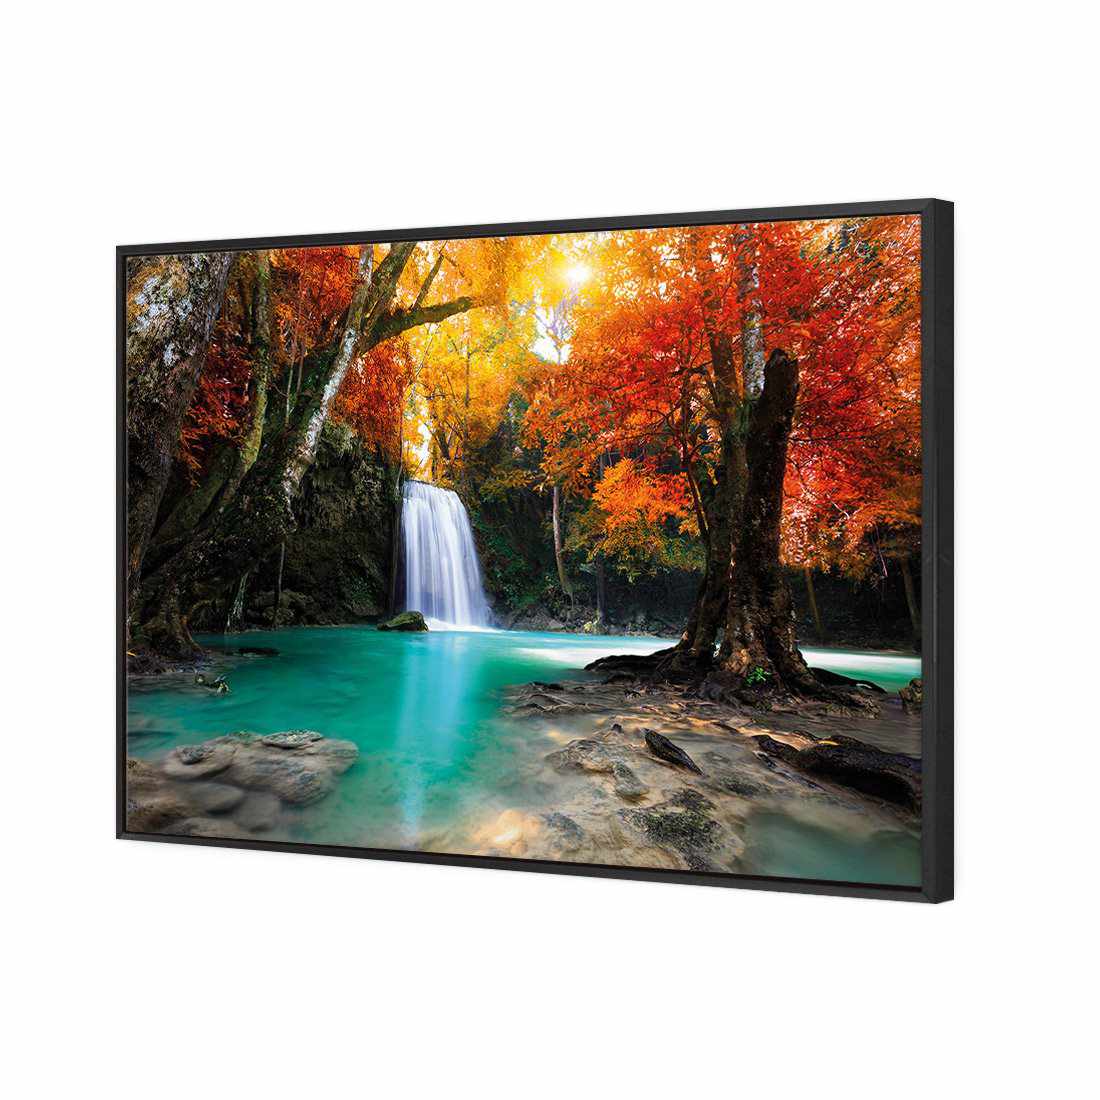 Autumn Waterfall Magic Canvas Art-Canvas-Wall Art Designs-45x30cm-Canvas - Black Frame-Wall Art Designs